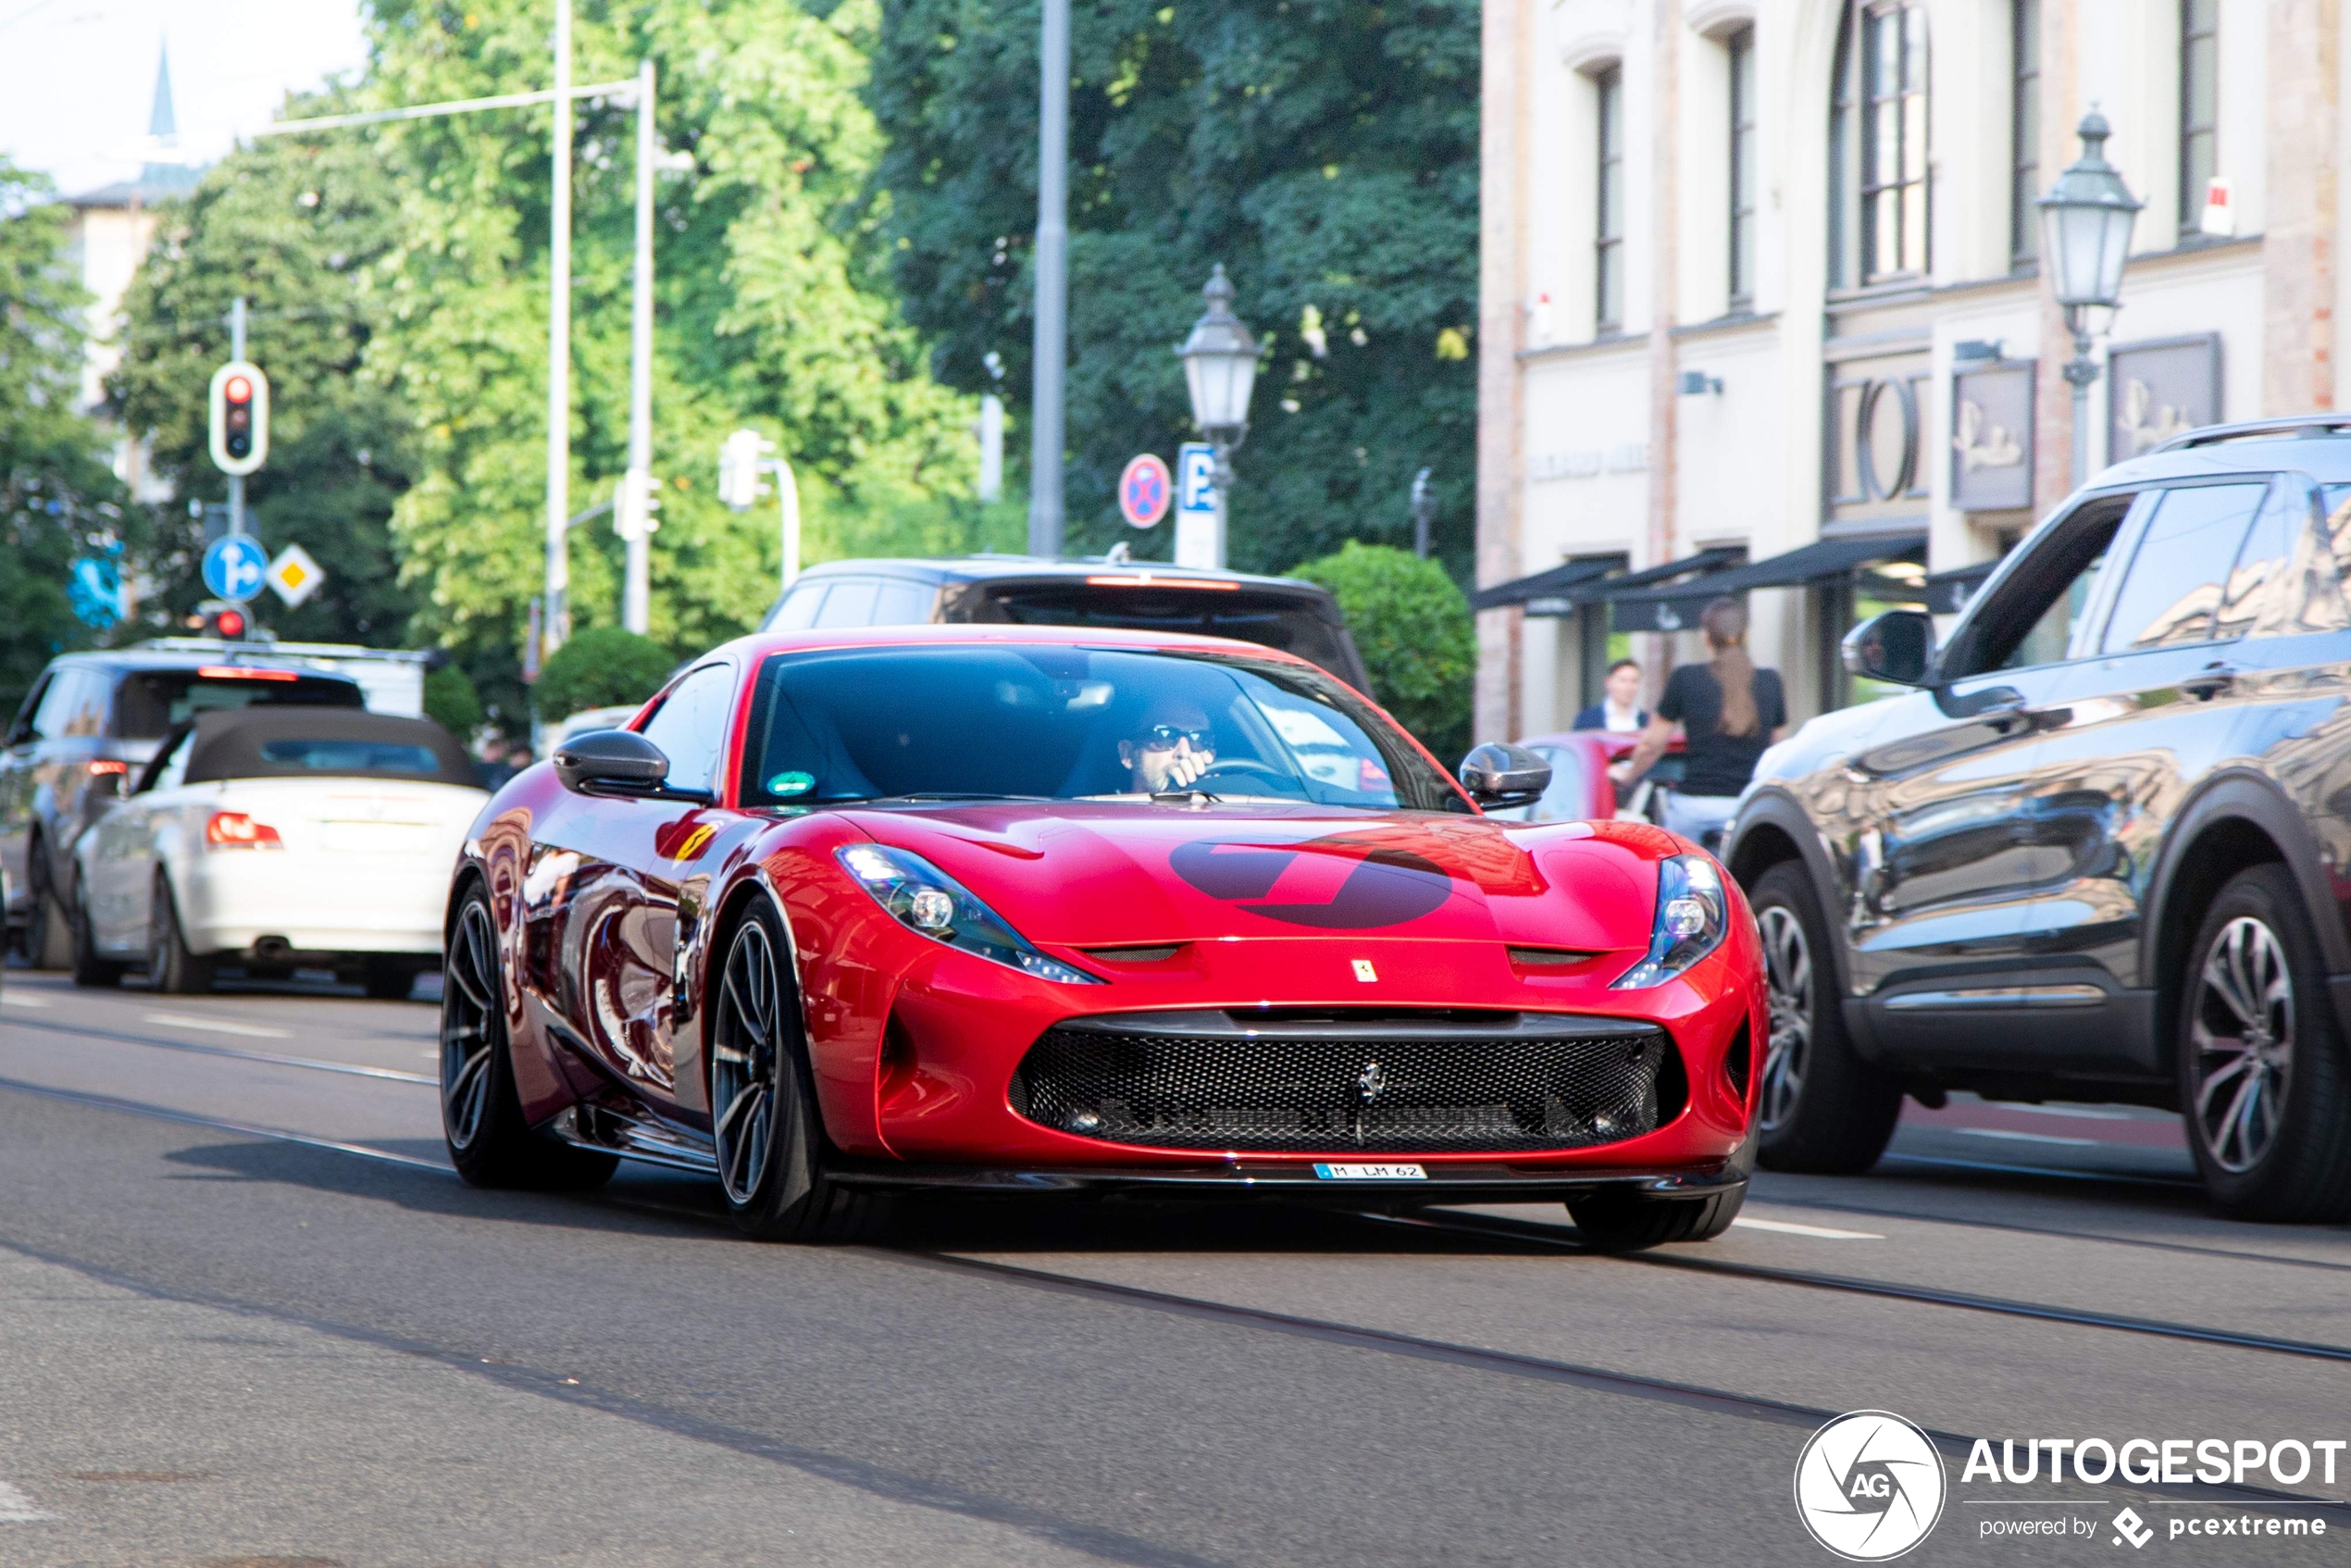 Eindelijk zien we de Ferrari Omologata rijdend in beeld